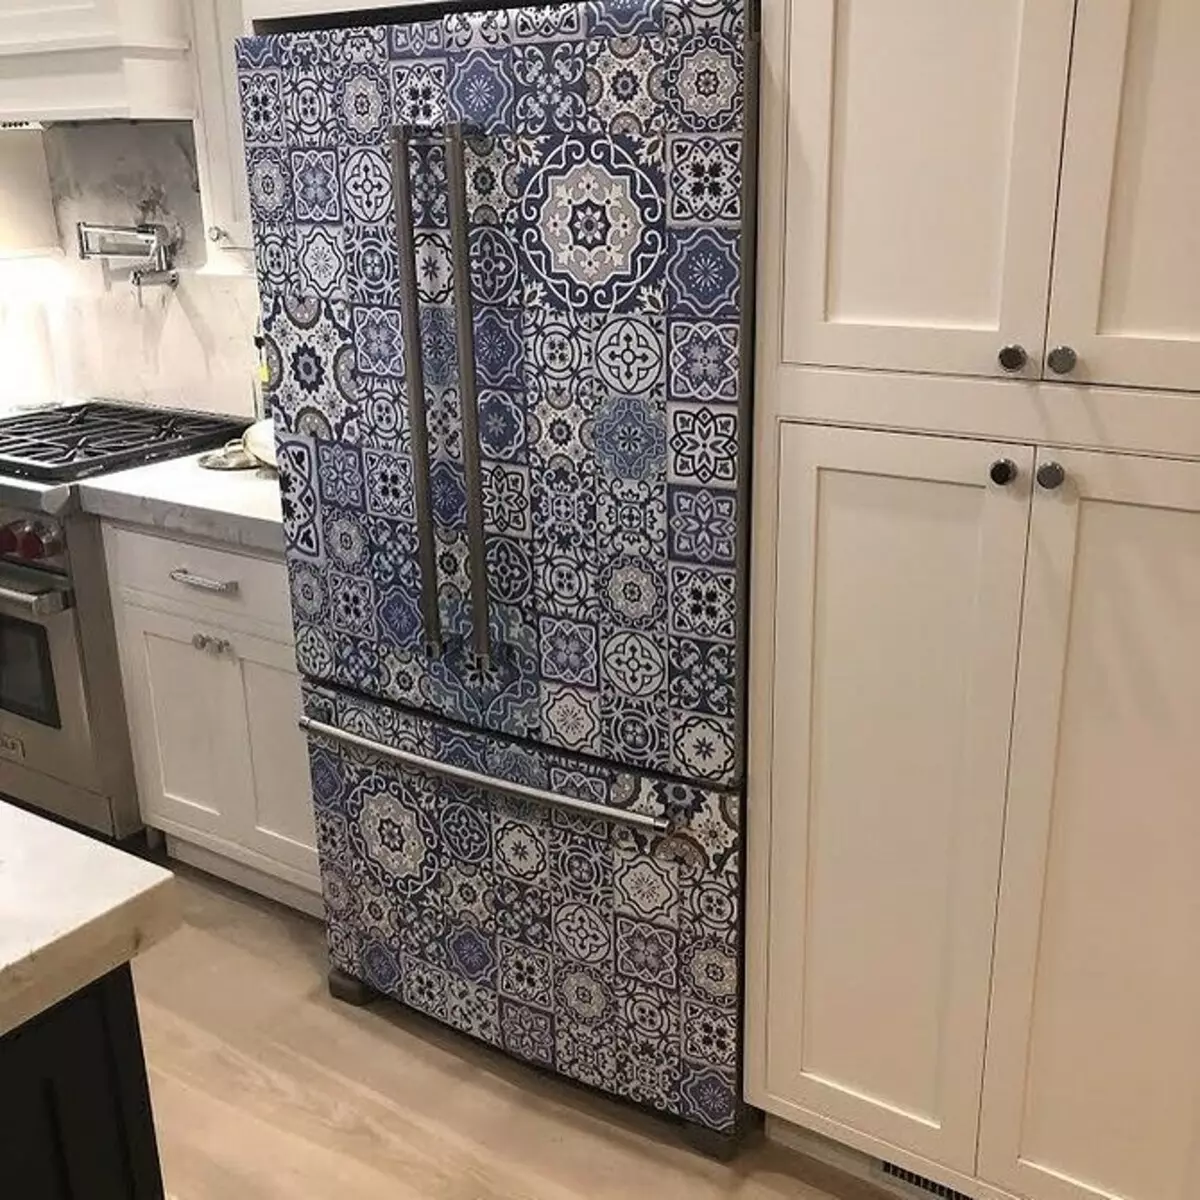 Ажурирамо стари фрижидер: 10 неочекиваних идеја 8512_39